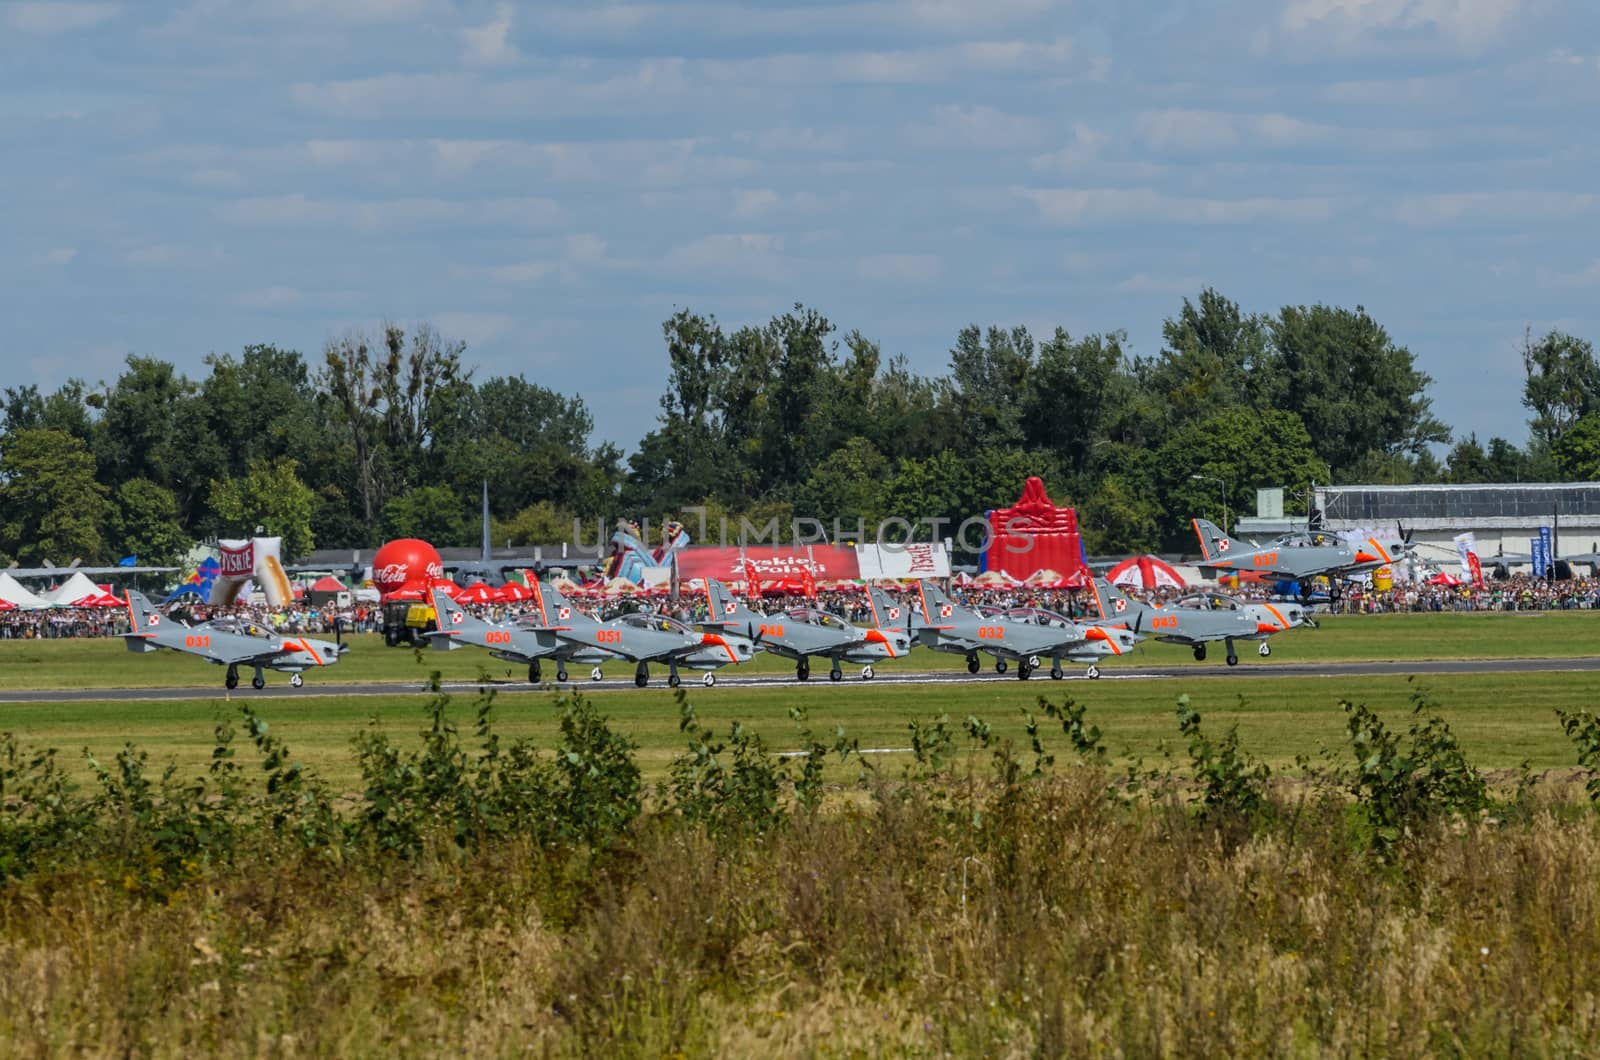 Orlik aerobatic display team during Radom Air Show 2013 by Attila